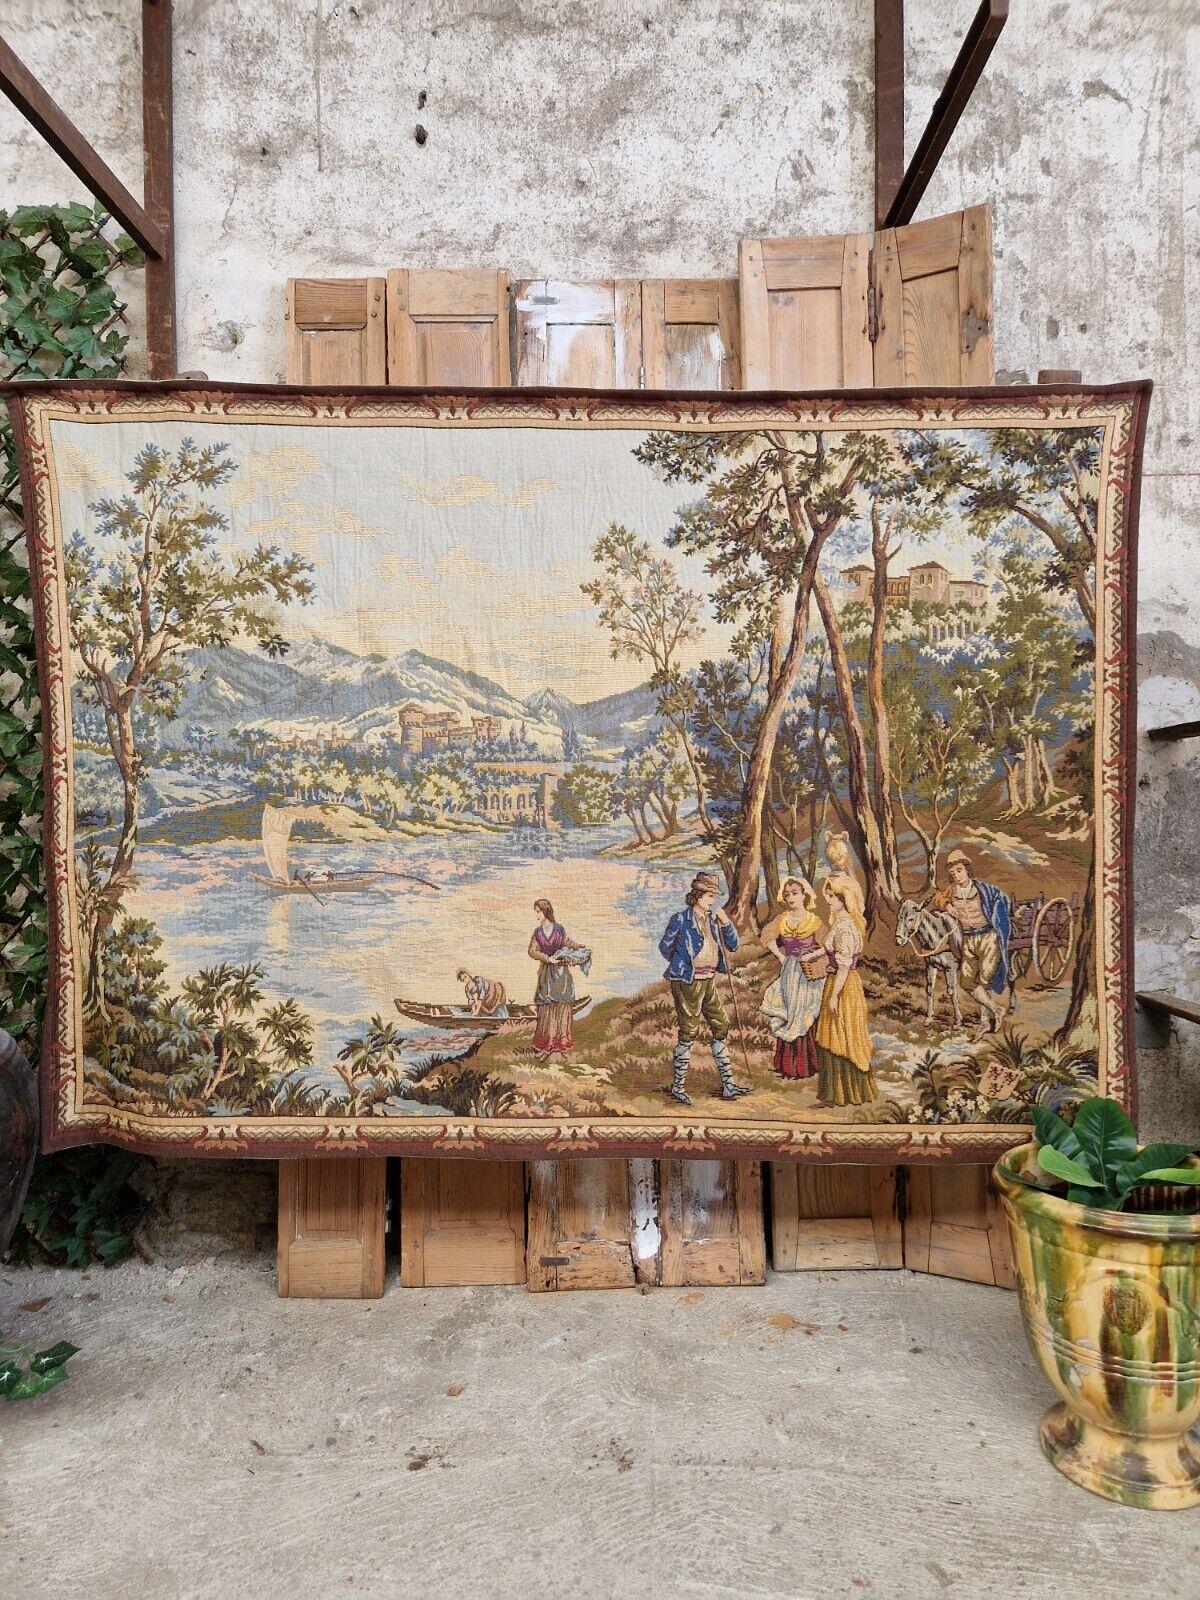 Cette magnifique et unique tapisserie d'Aubusson est une pièce étonnante de l'histoire française. Mesurant 126 x 181 cm, il est suffisamment grand pour s'imposer dans n'importe quelle pièce. La scène galante multicolore est tissée de manière